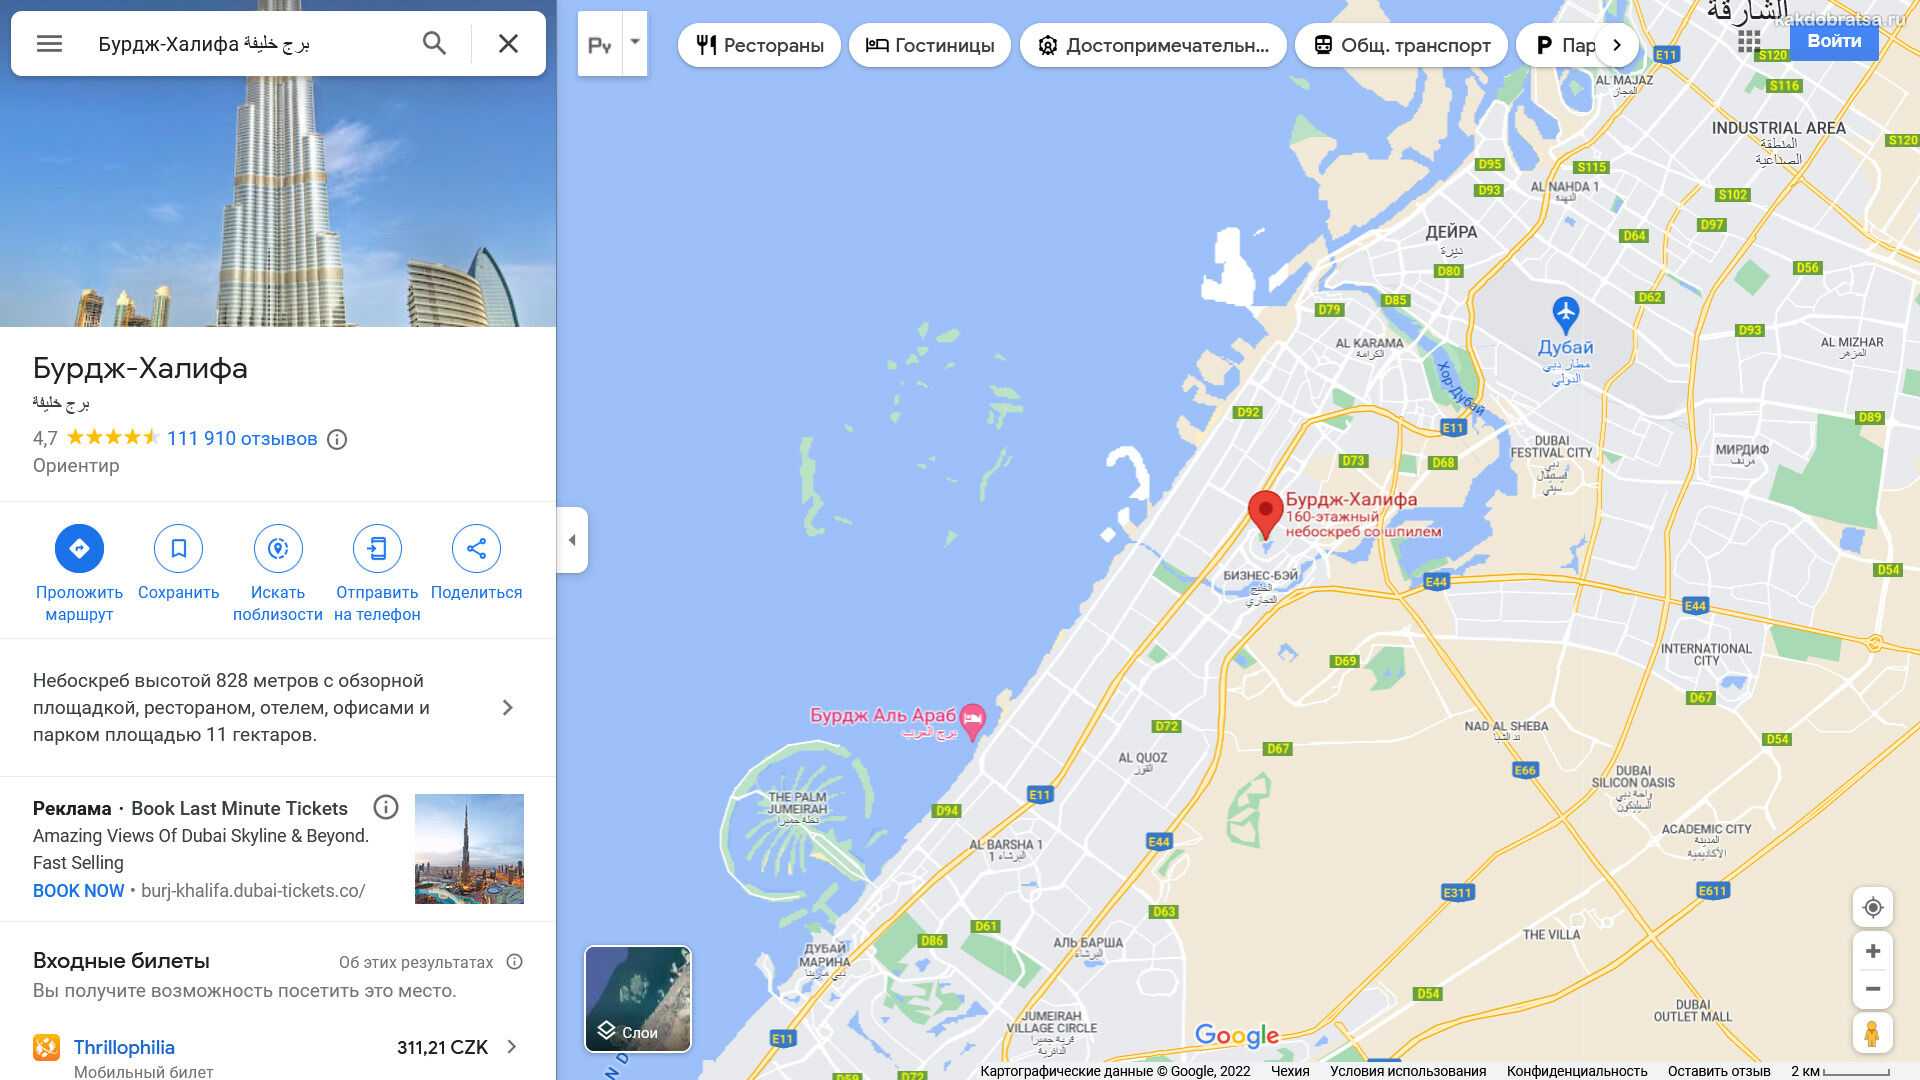 Дубай молл - как добраться, где находится, фото, описание